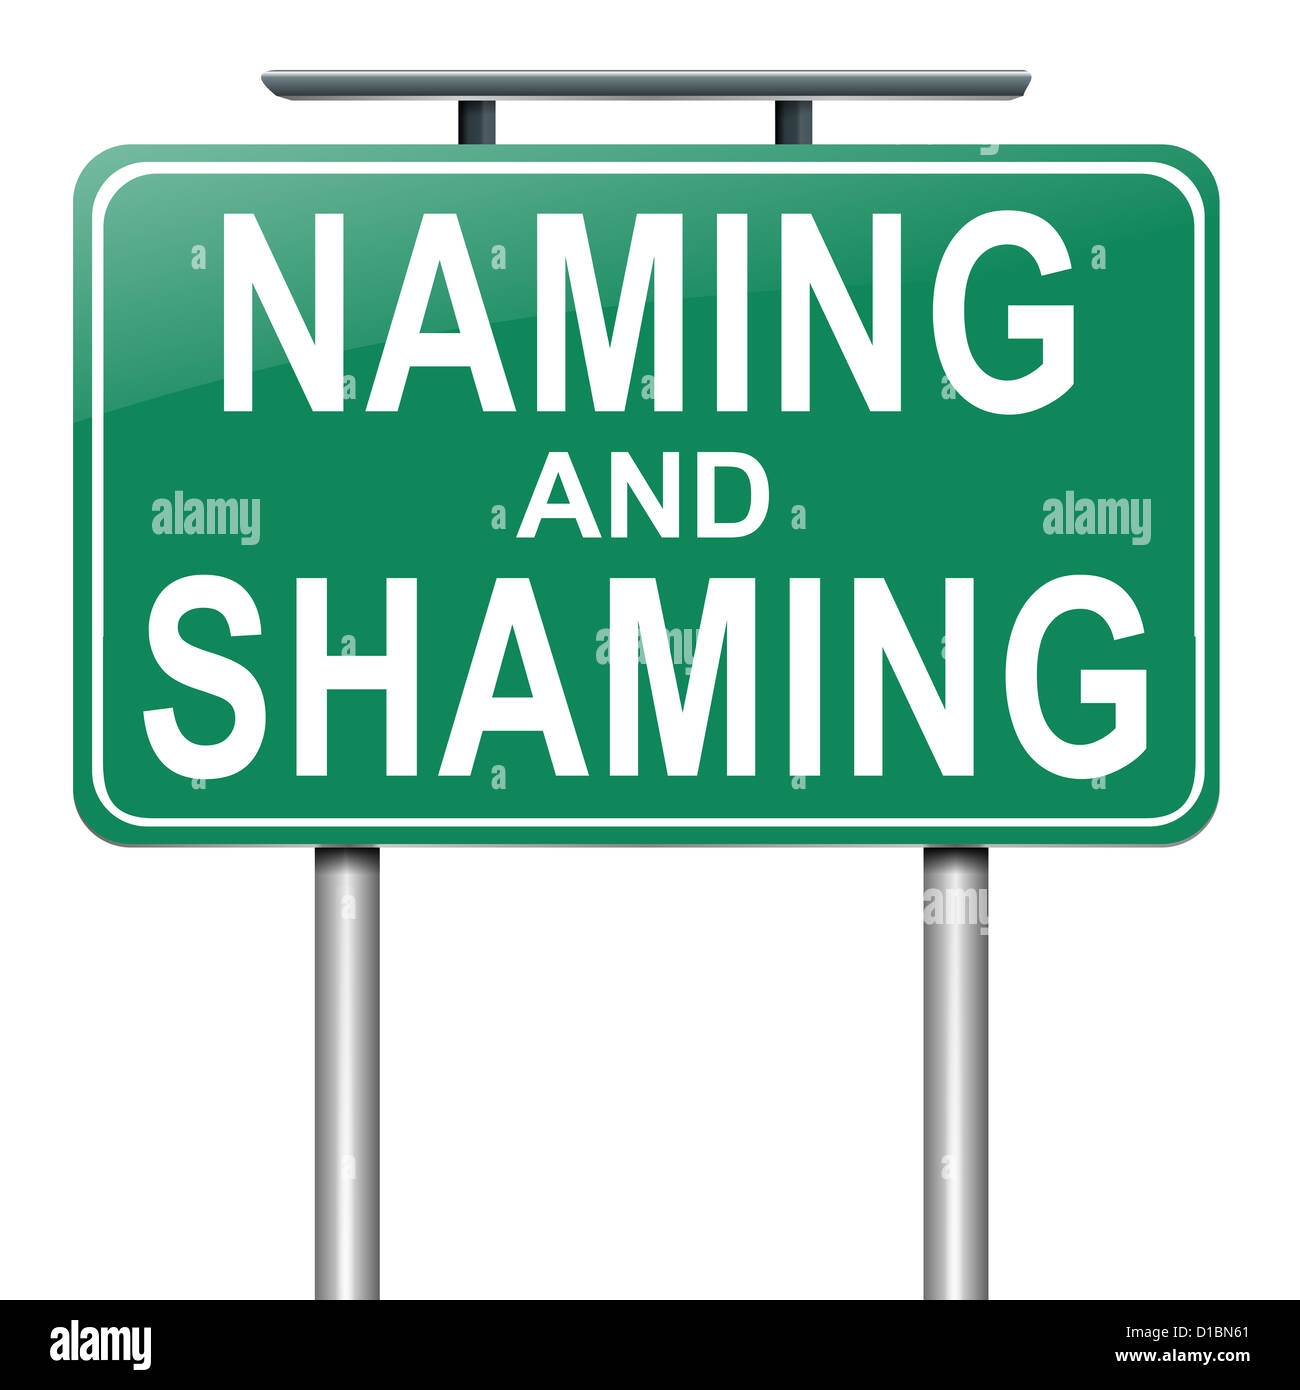 Naming and shaming. Stock Photo